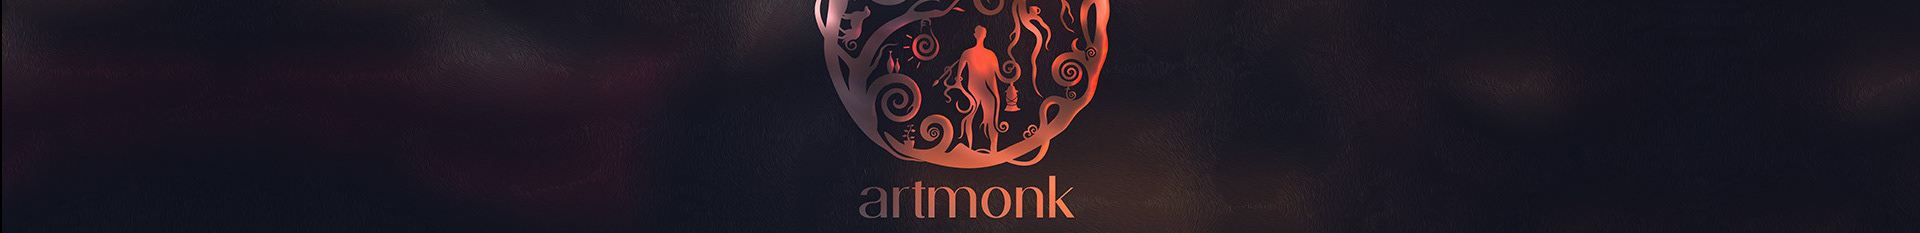 Profielbanner van Artmonk Designs